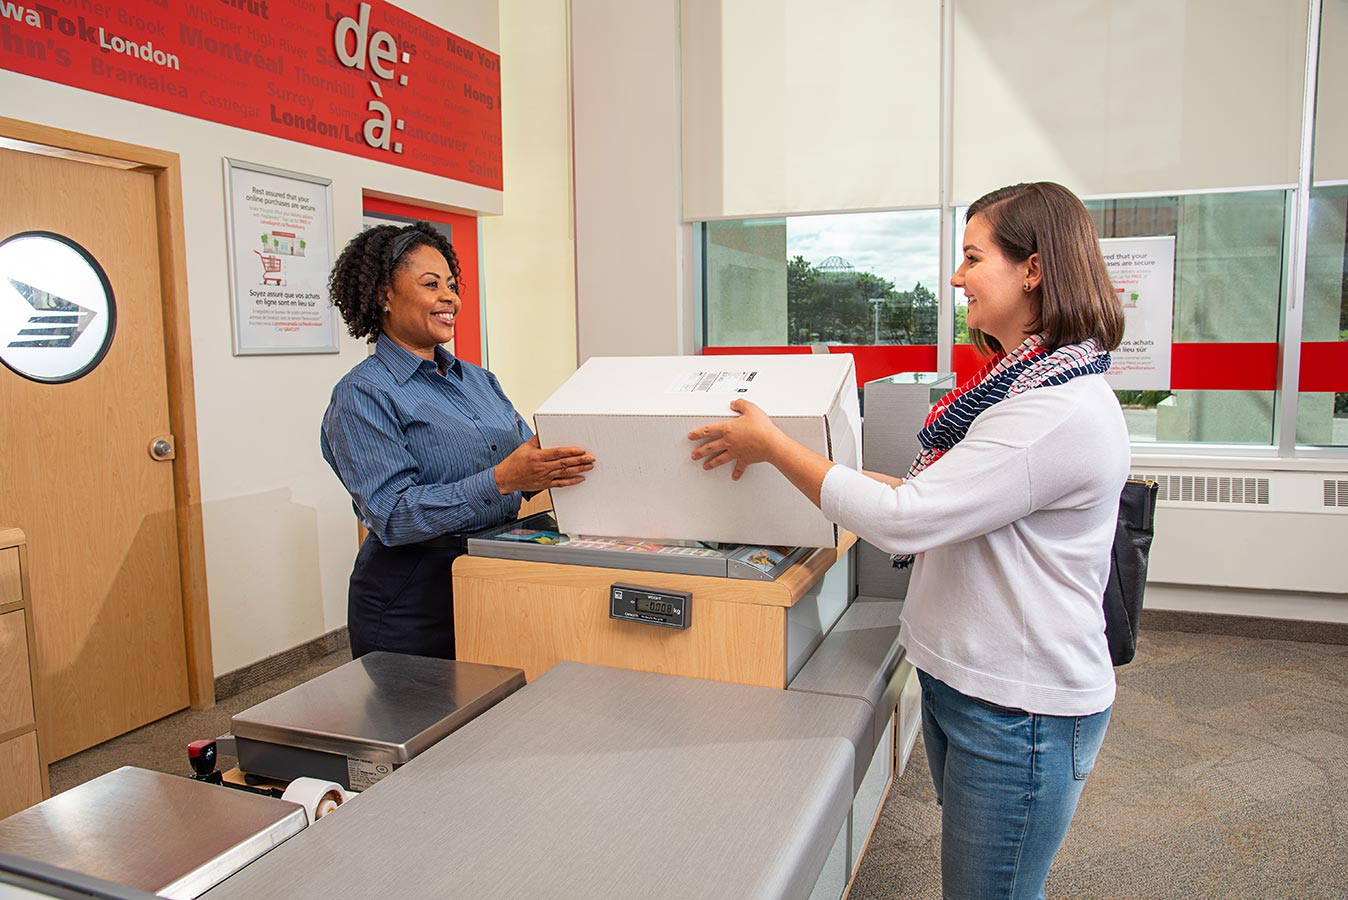 Une femme remet un colis à une employée de la Vente au détail au bureau de poste